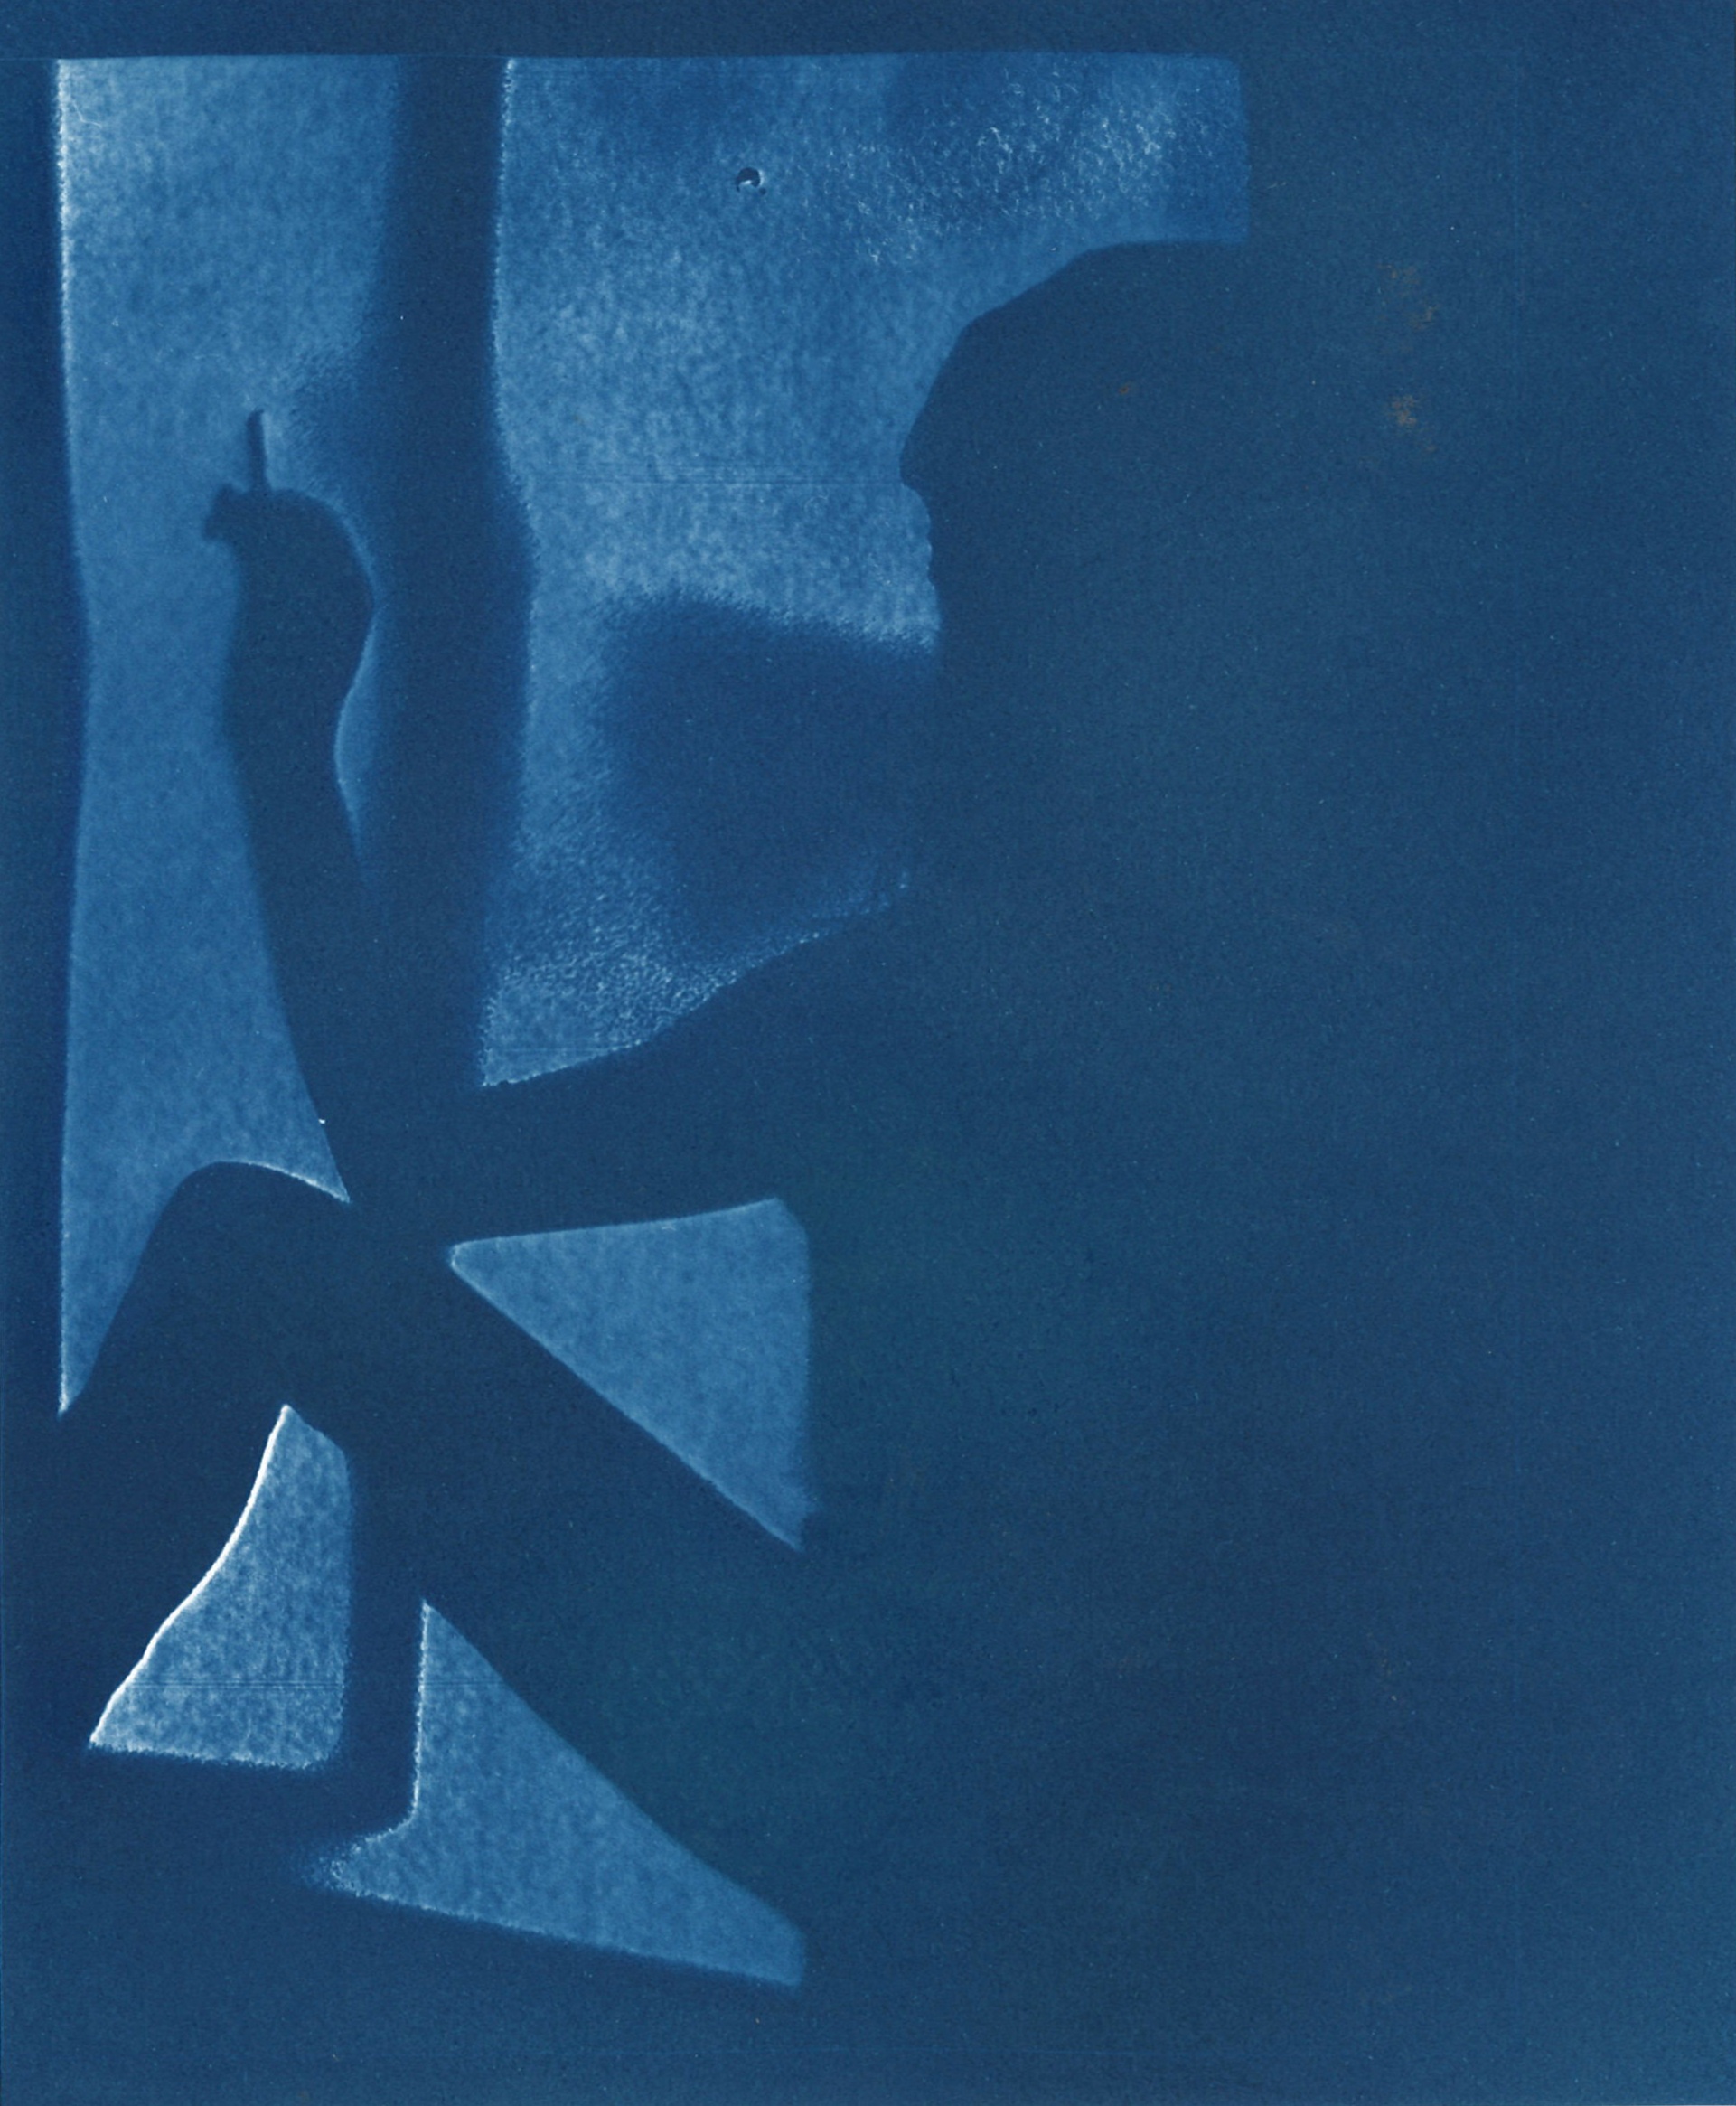 Manon Martsch, "L'Einsichten in Aussichten", 2021, cyanotype, 19,9 x 16,3 cm